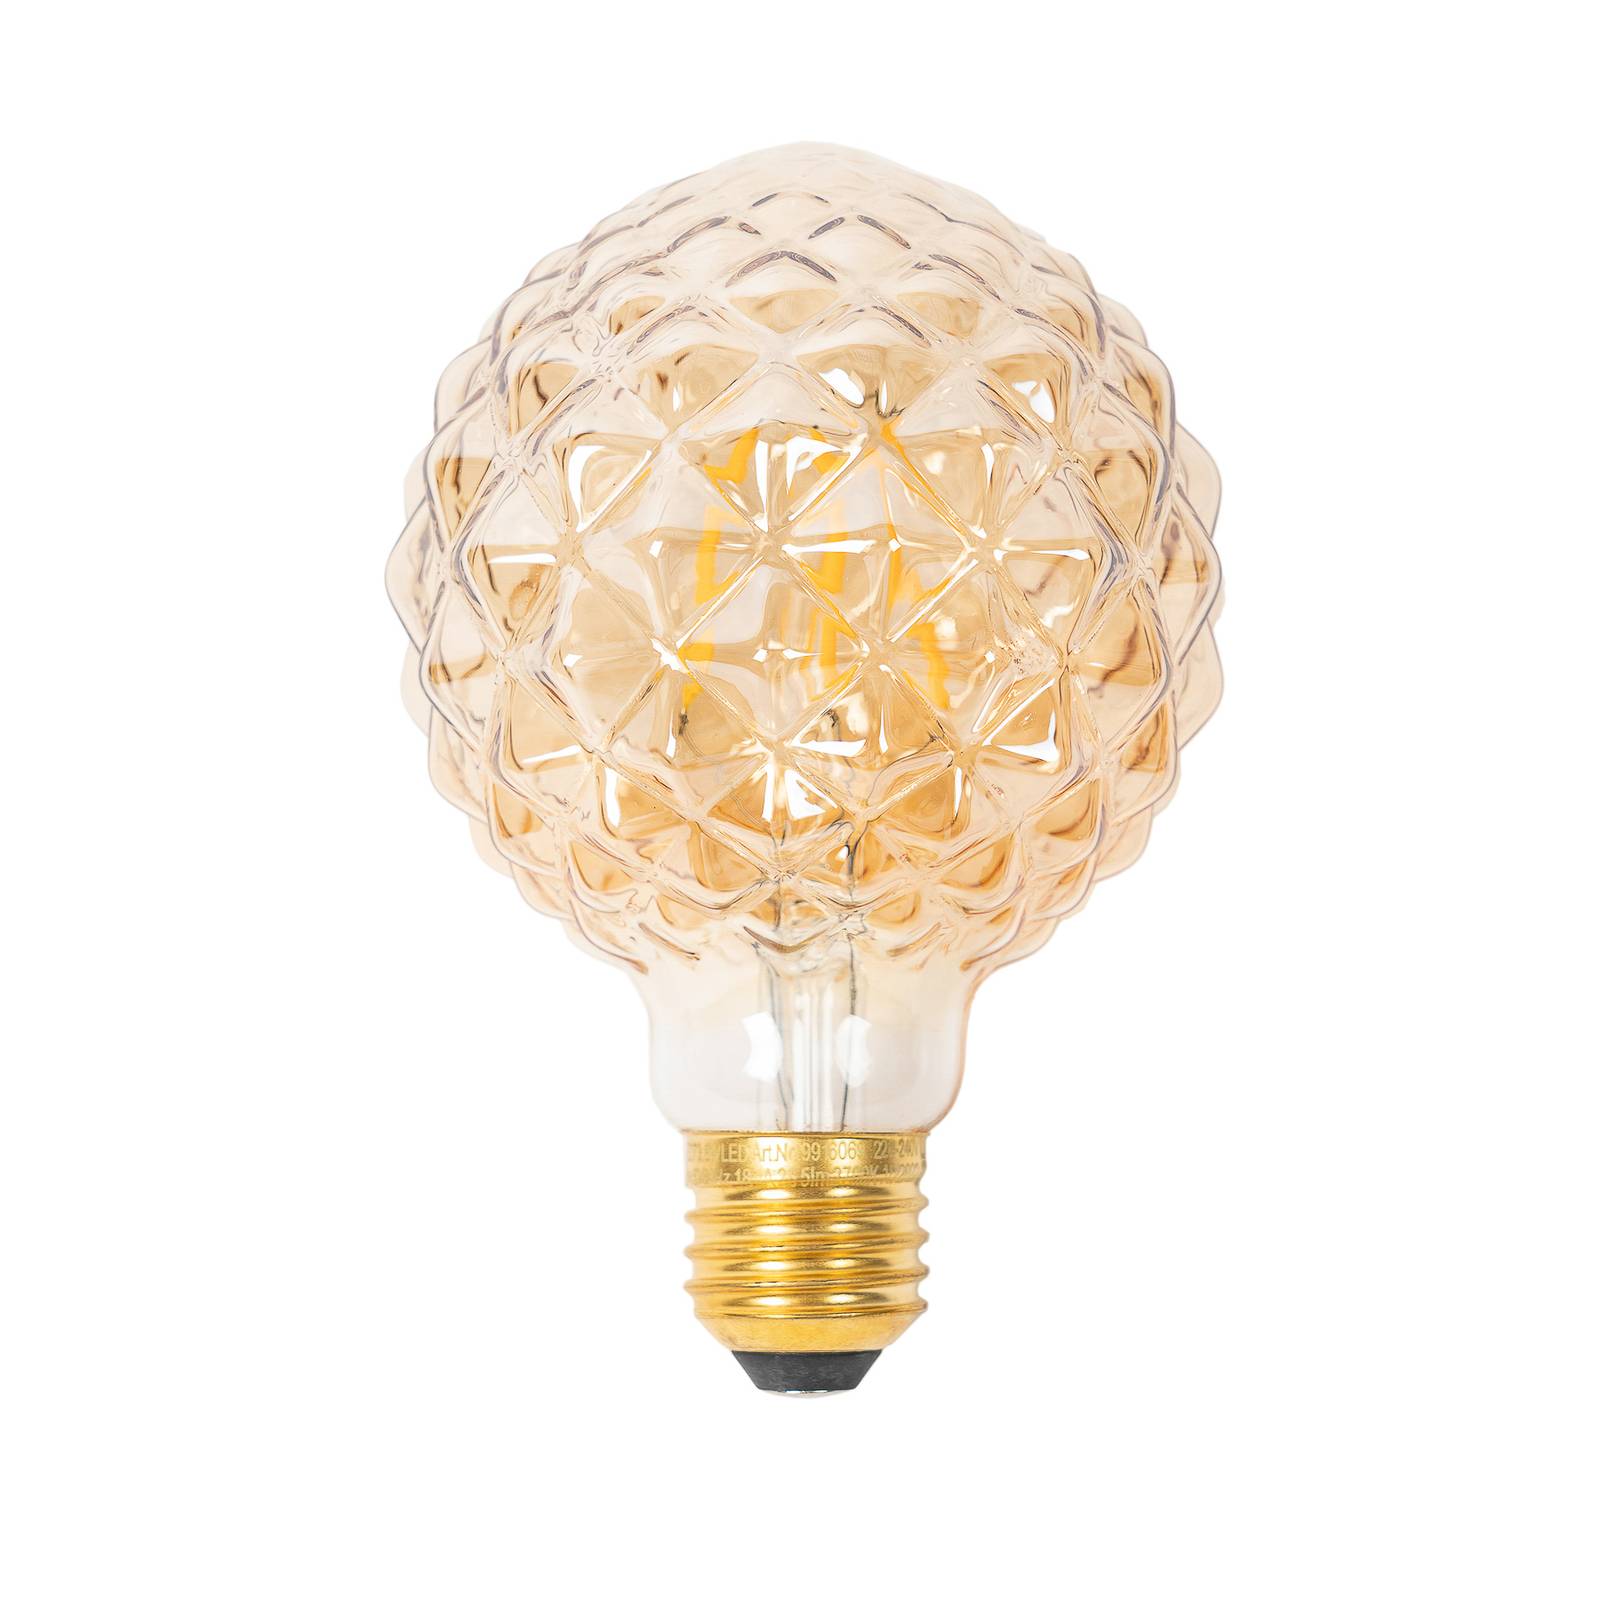 LUCANDE E27 3,8W LED-Lampe G95, 2700K, Struktur, amber